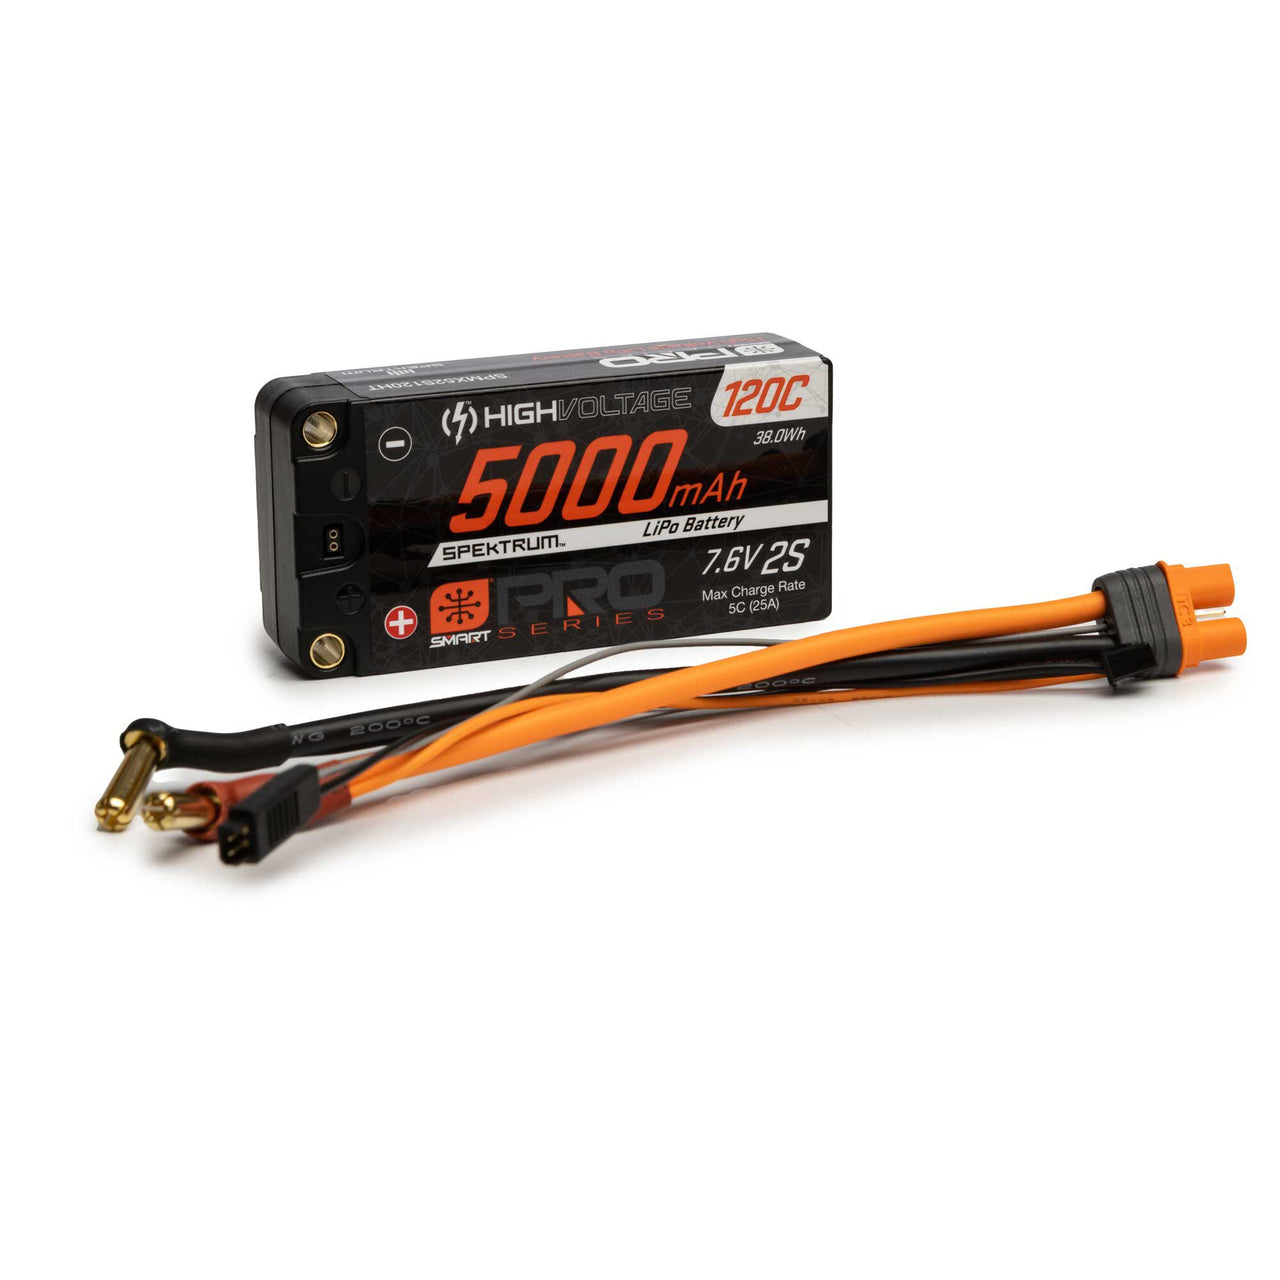 SPMX52S120HT 7,6 V 5000 mAh 2S 120C Smart Pro Race Shorty Hardcase LiHV Batterie : tubes, 5 mm 